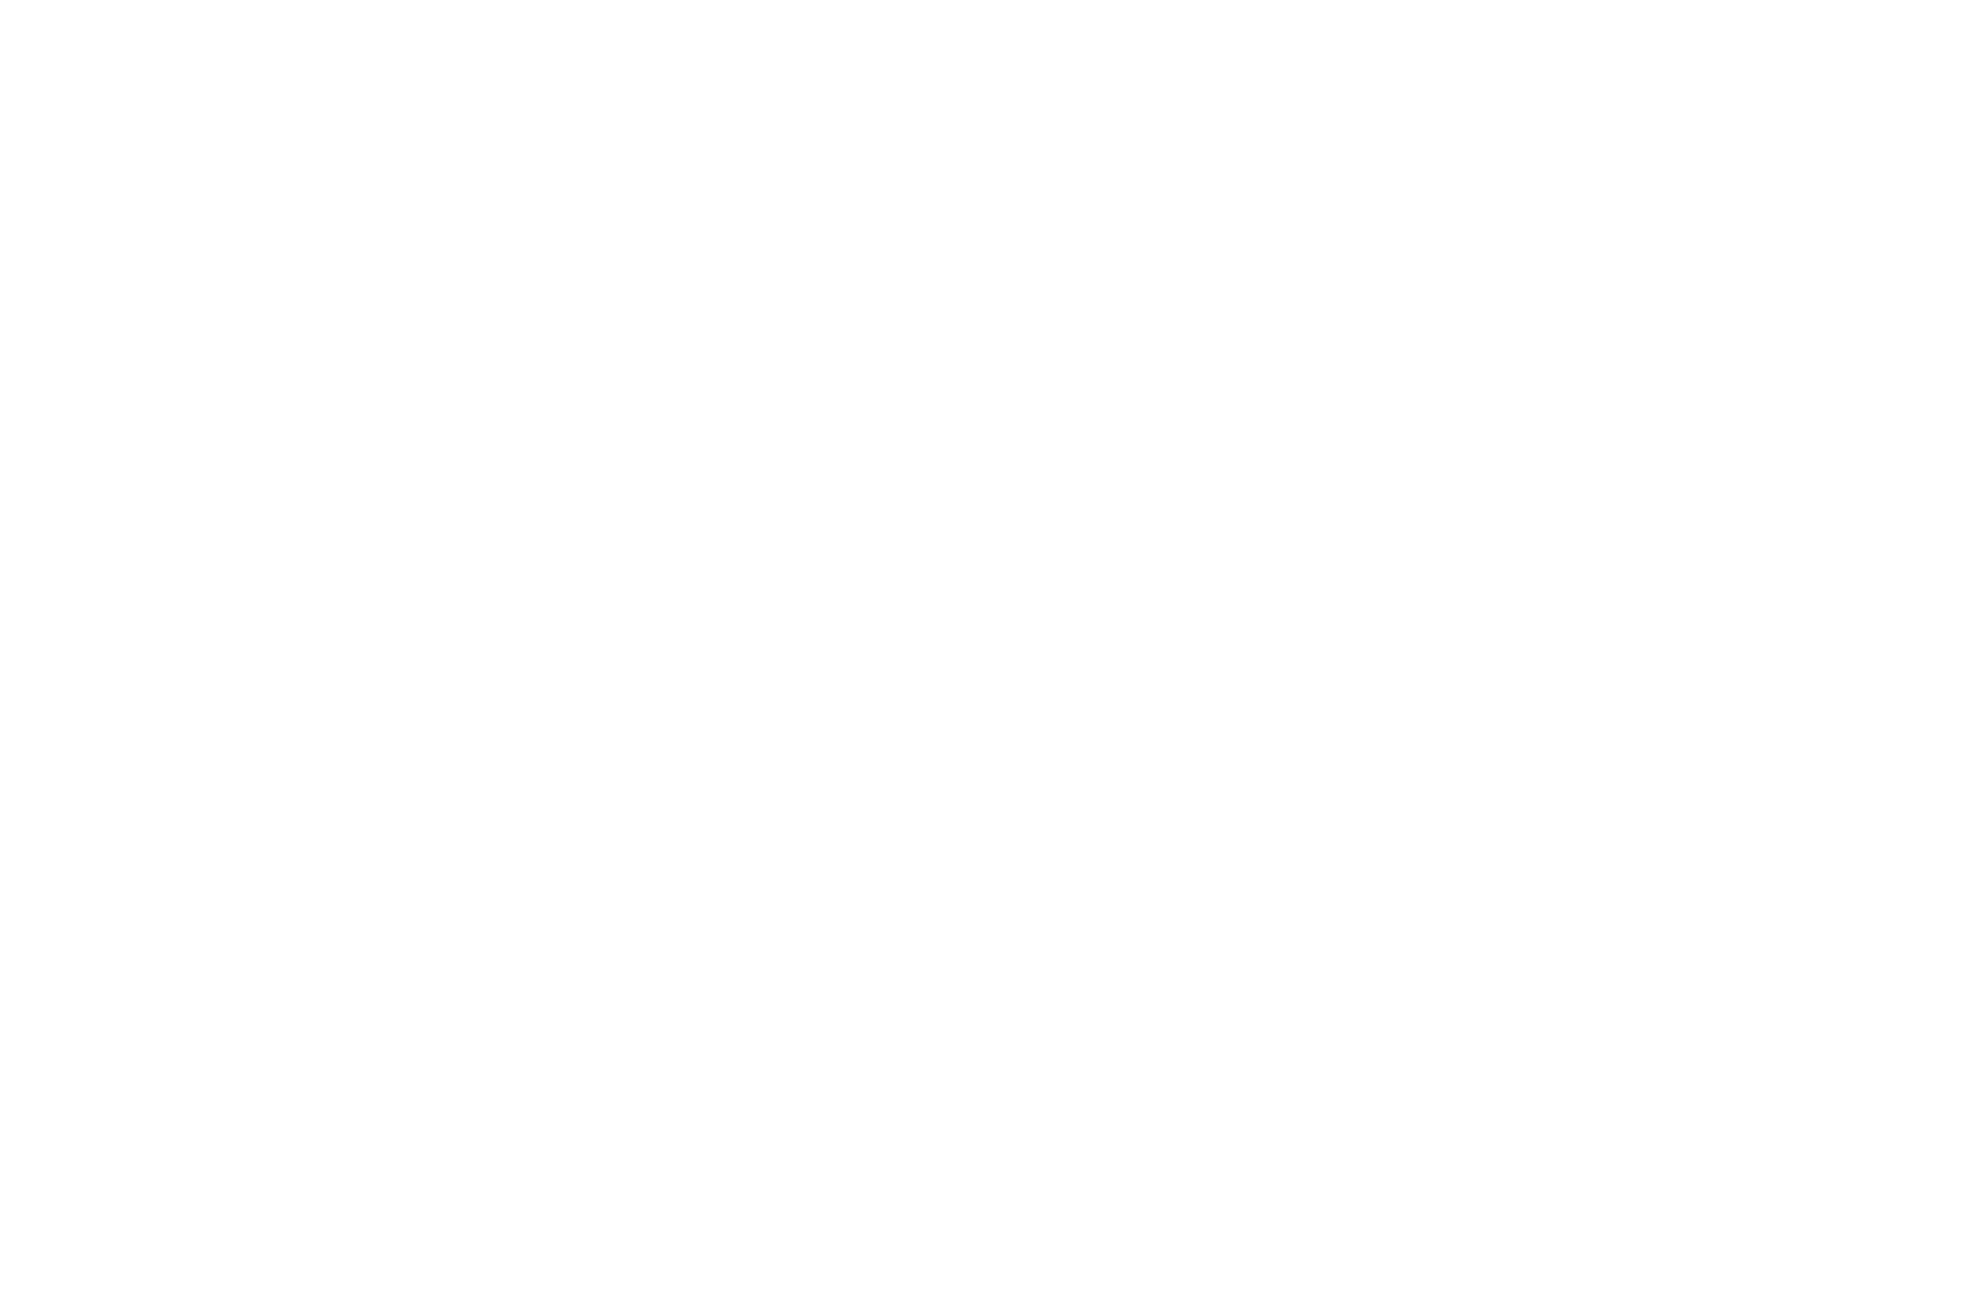 K-katra-white-cropped